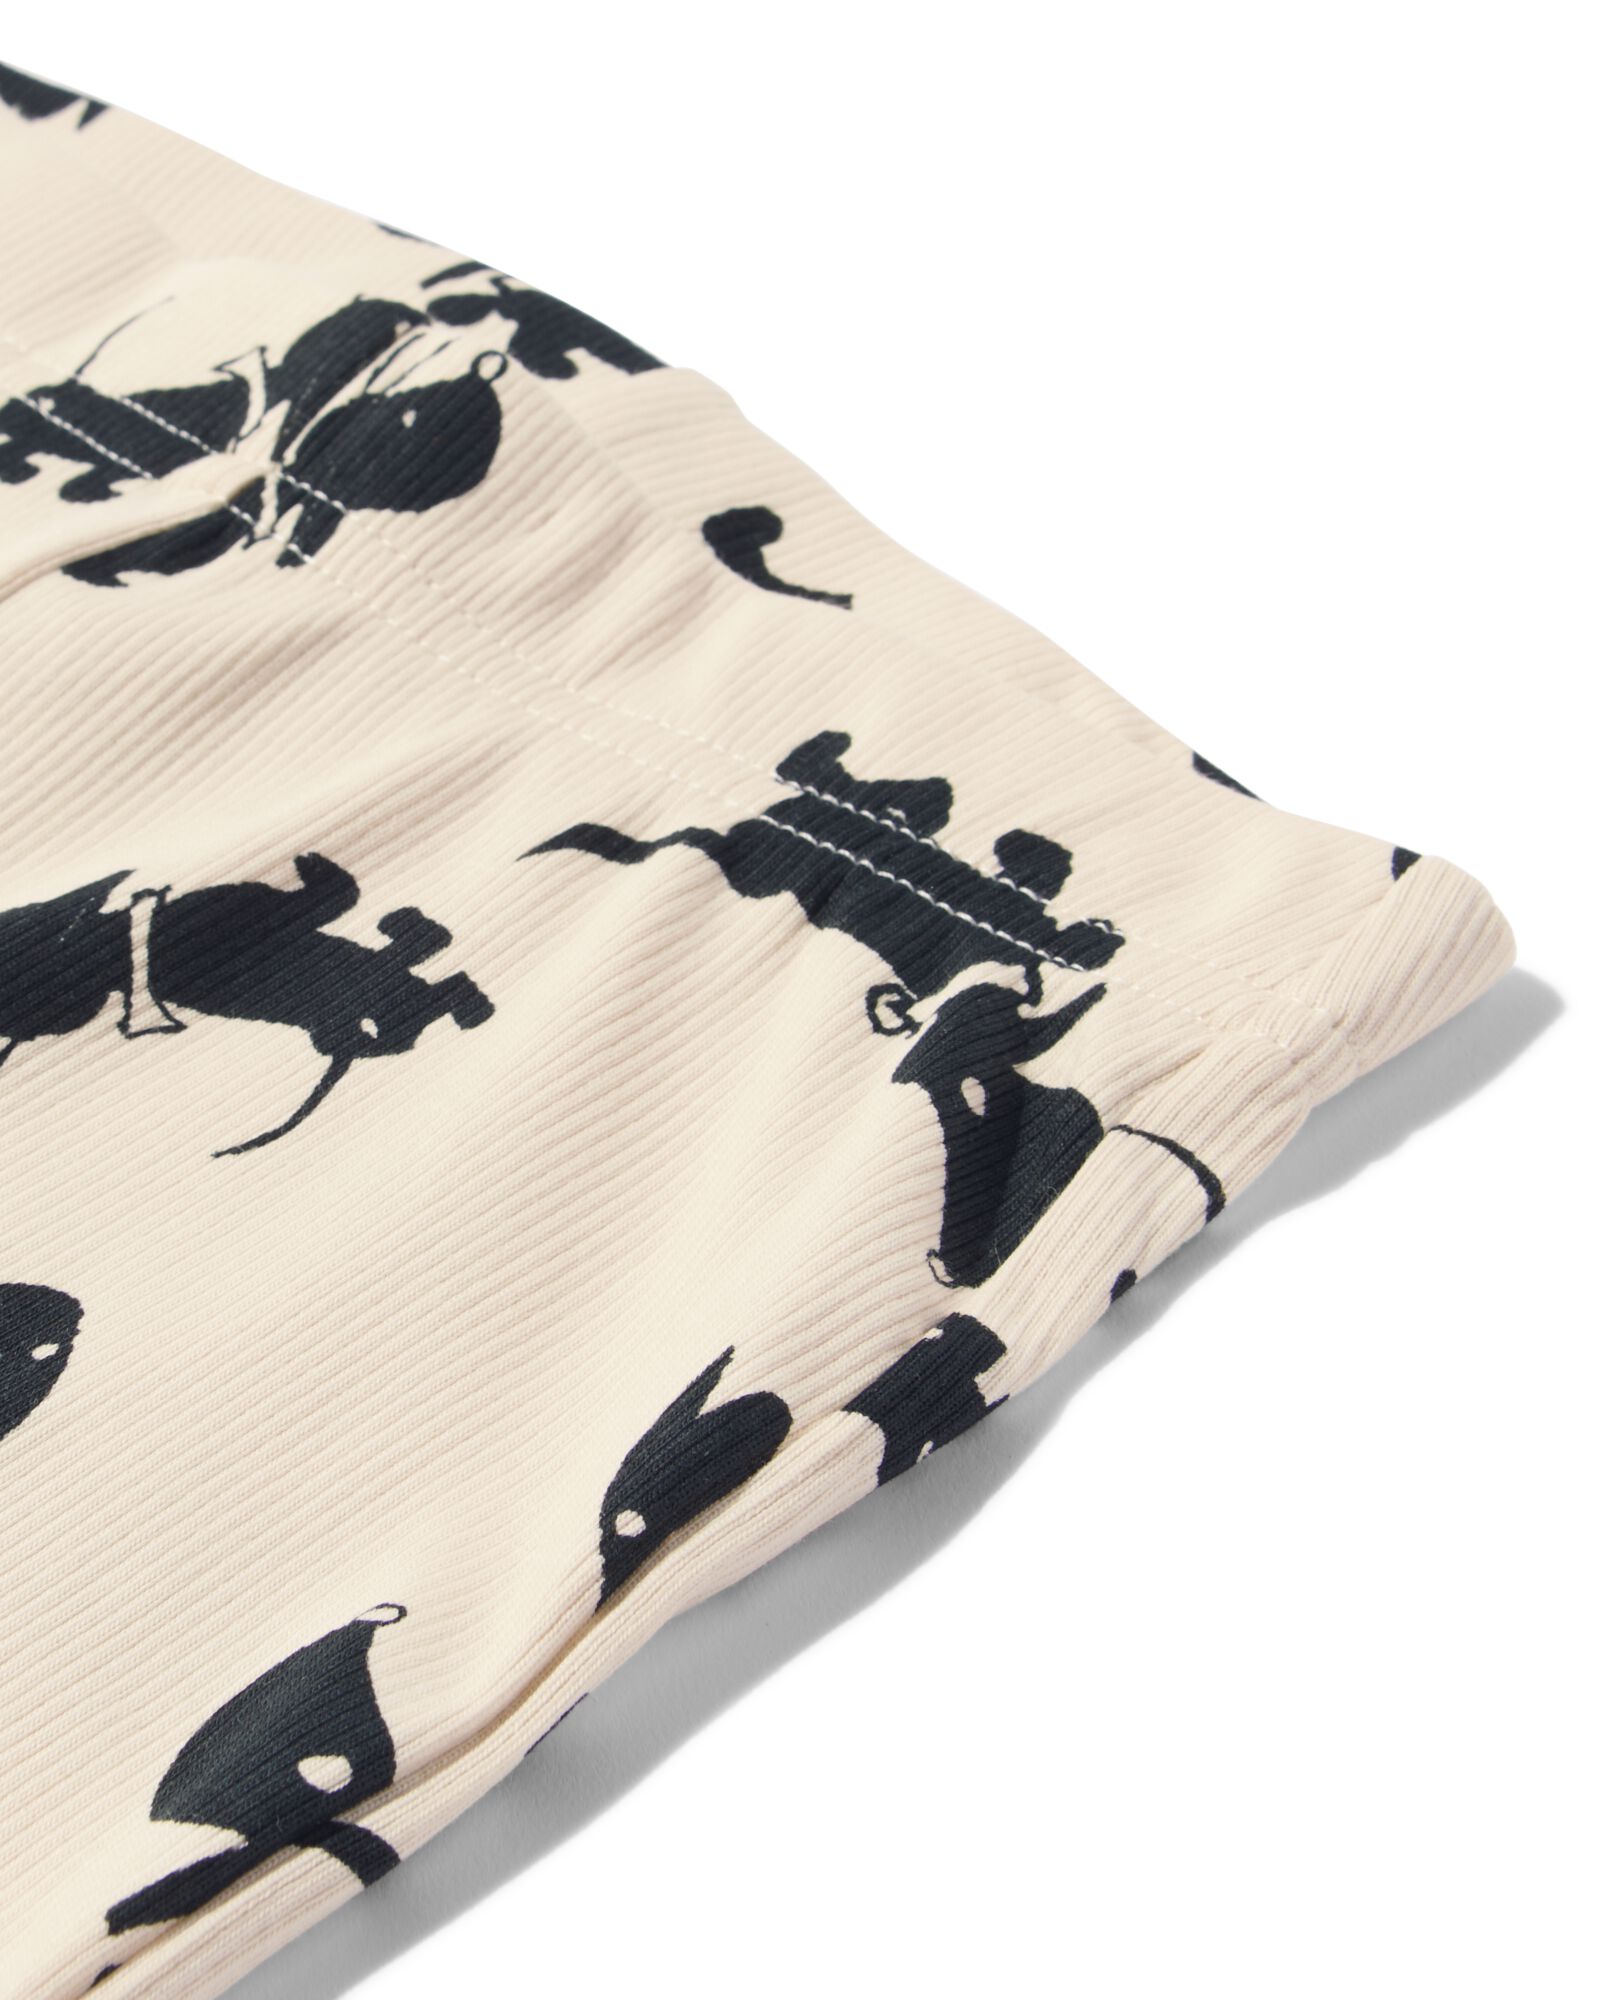 pyjama bébé côte coton/stretch Takkie blanc blanc - 1000028772 - HEMA